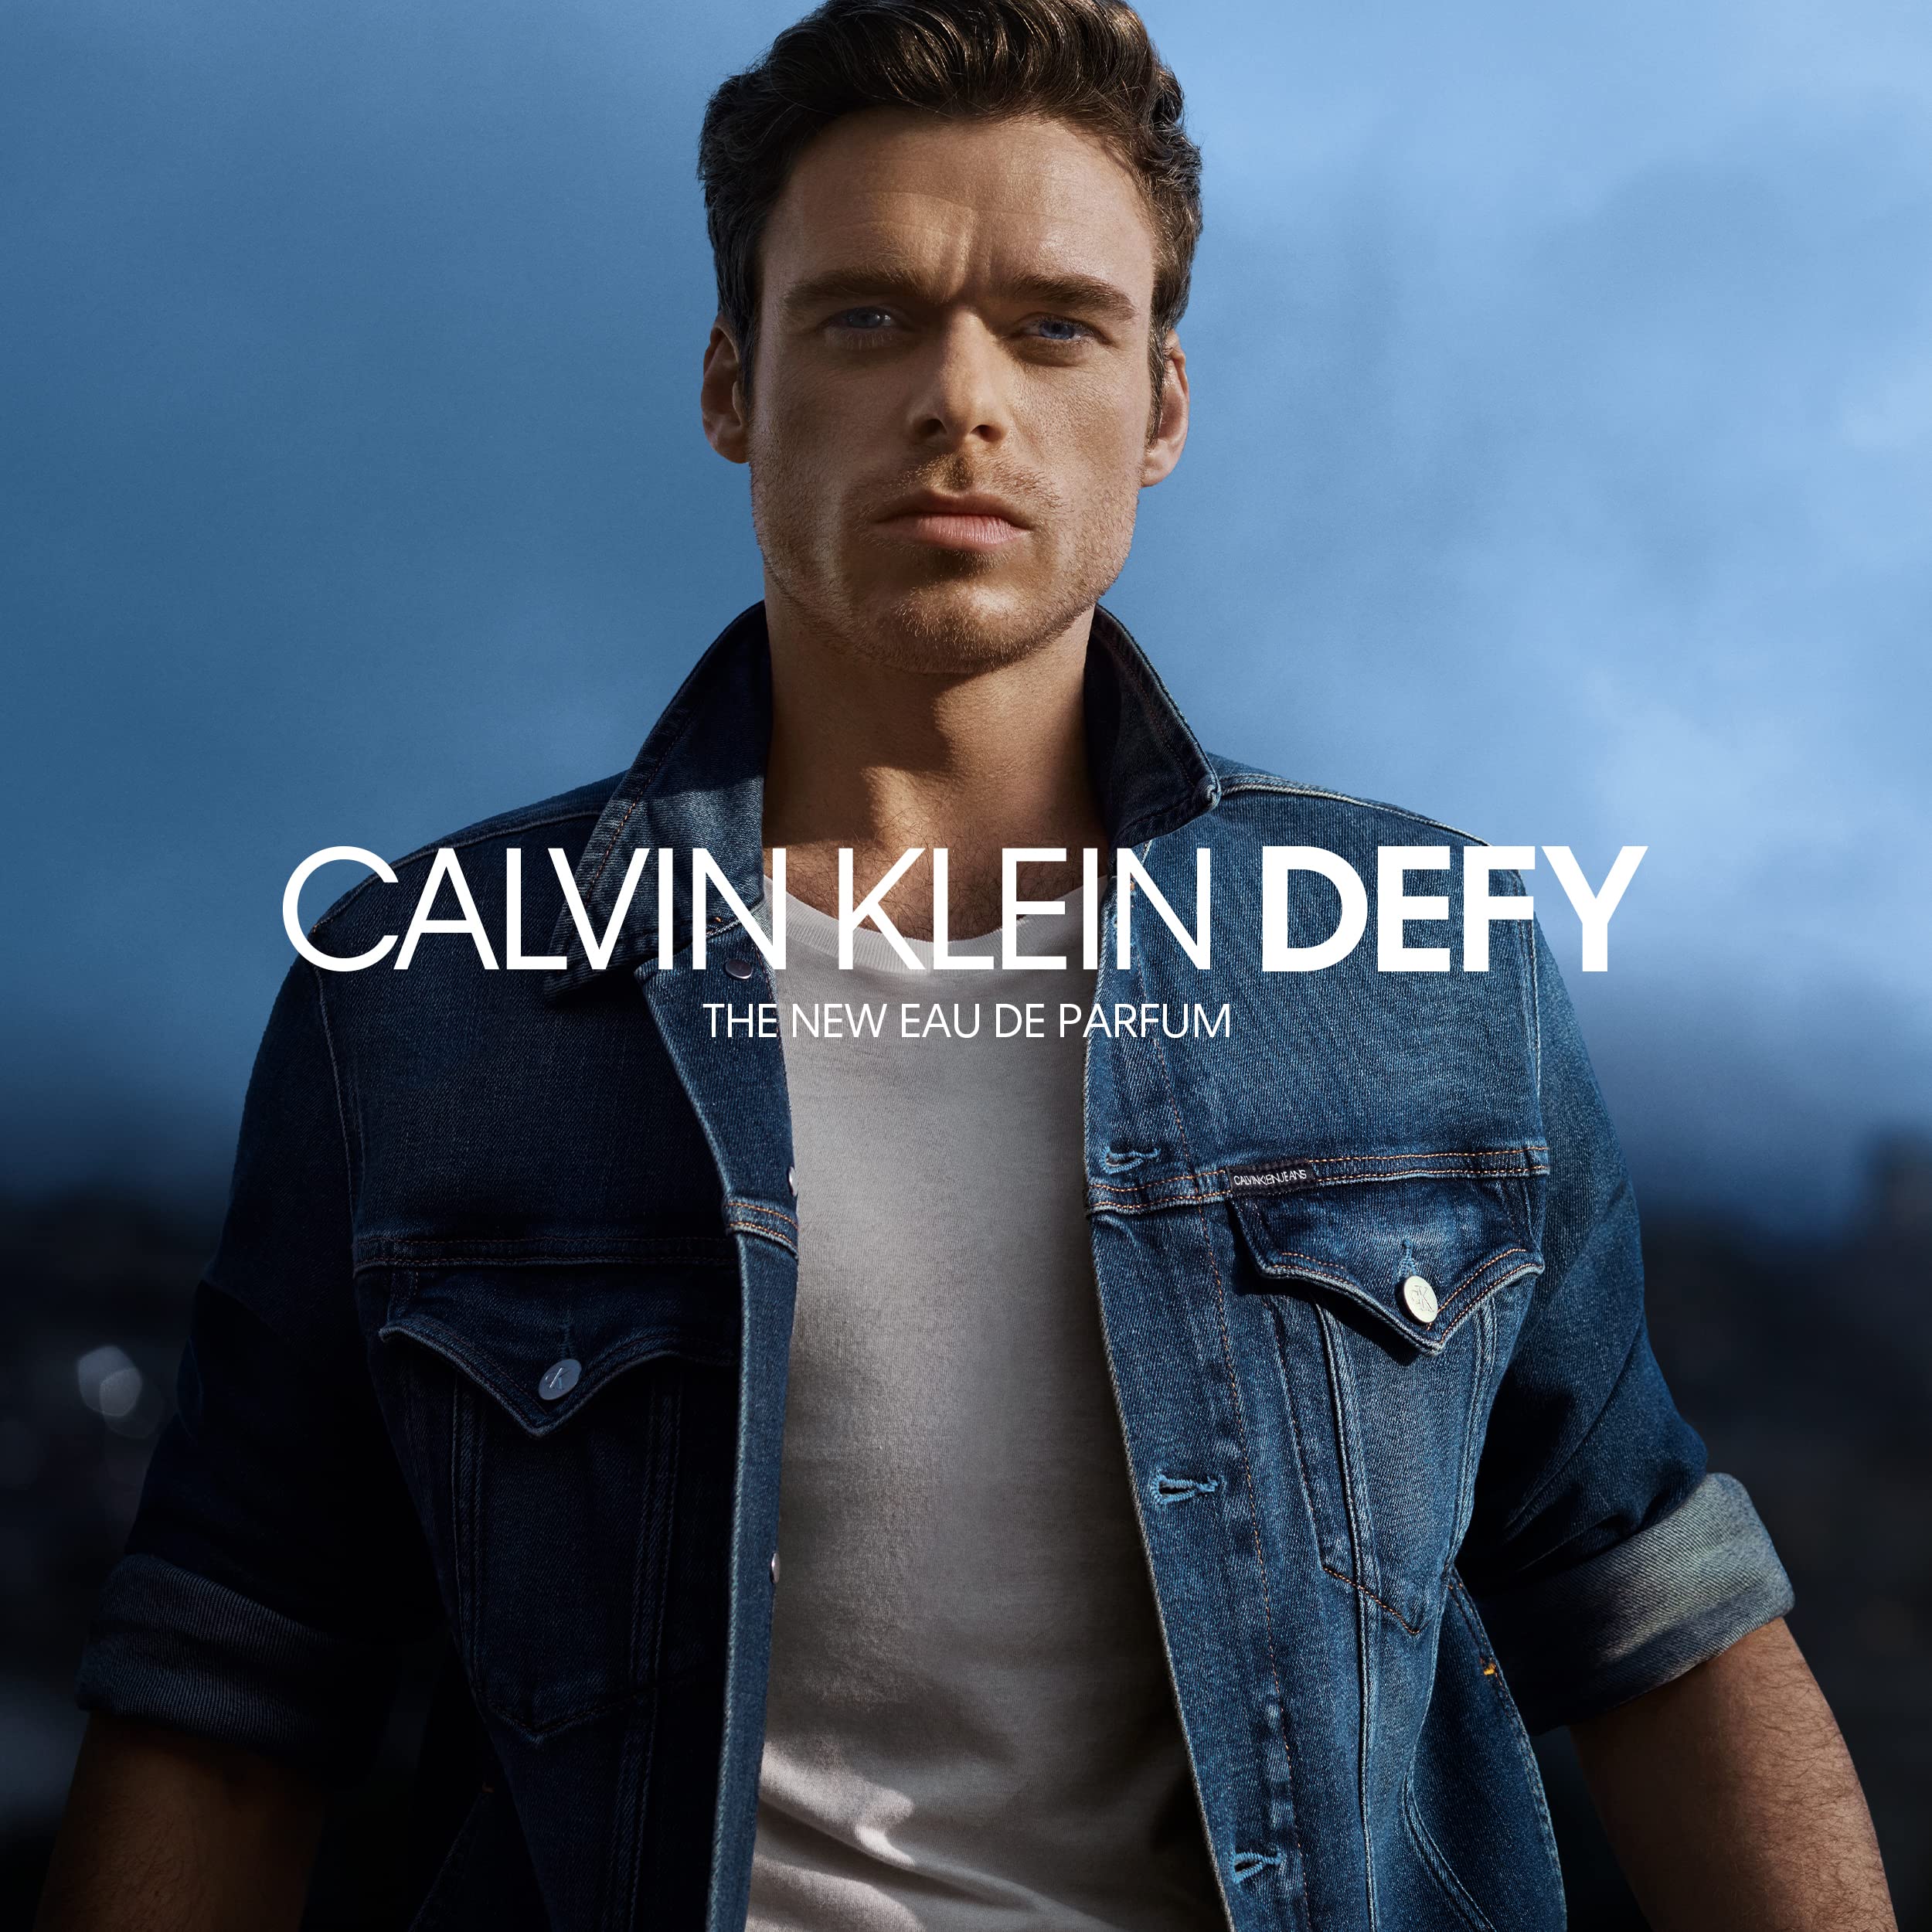 Calvin Klein Defy for Men Eau de Parfum - Notes of fresh wood and leather